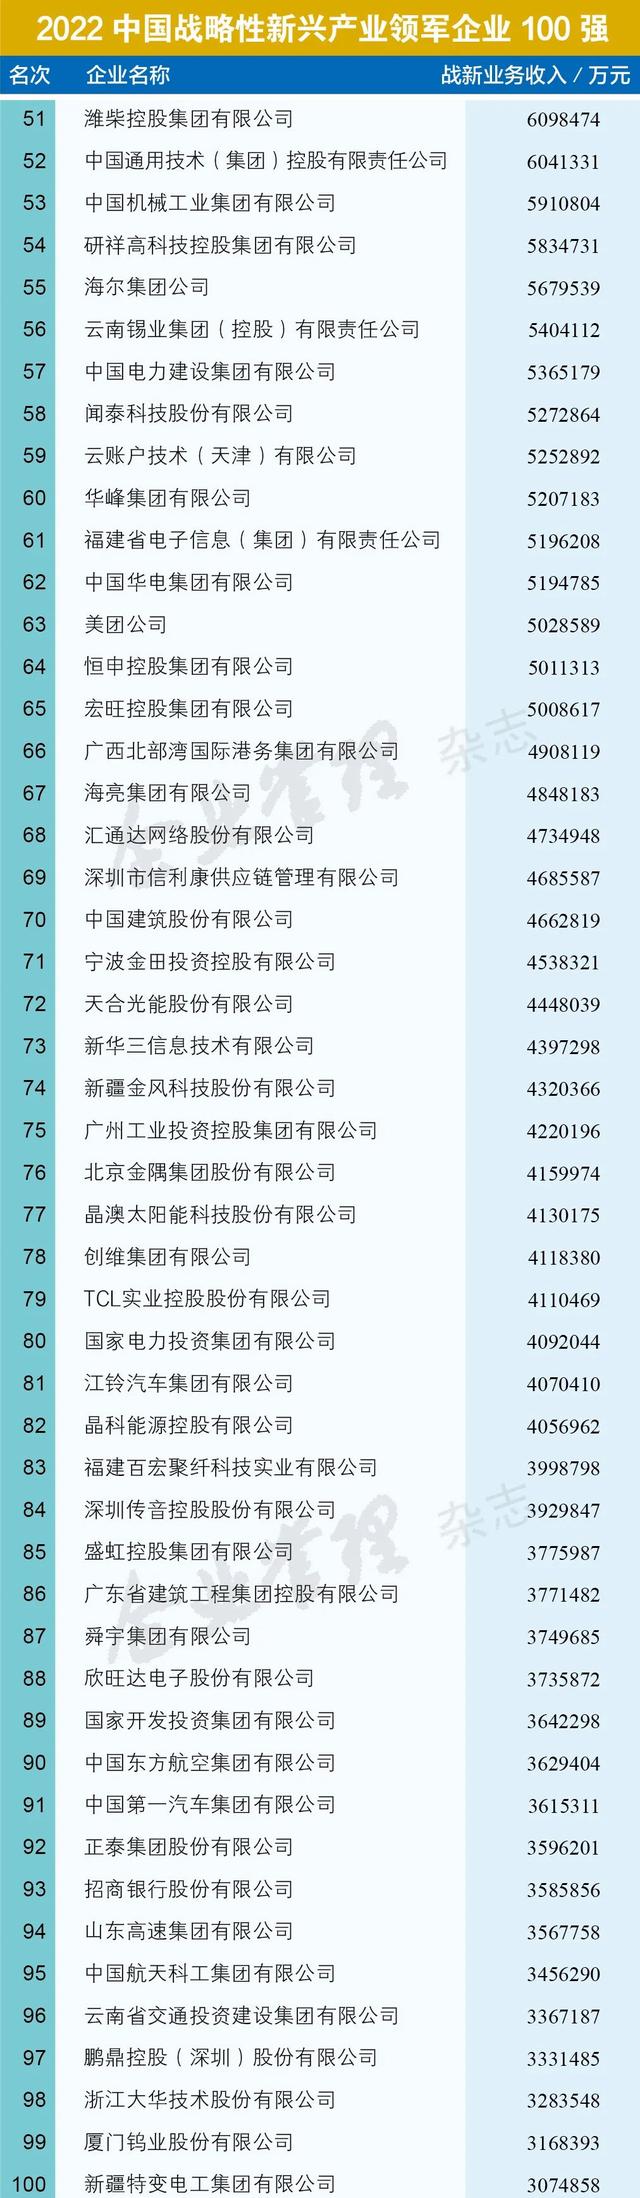 2022中国国企排名100名名单(国企前100名排名)插图1